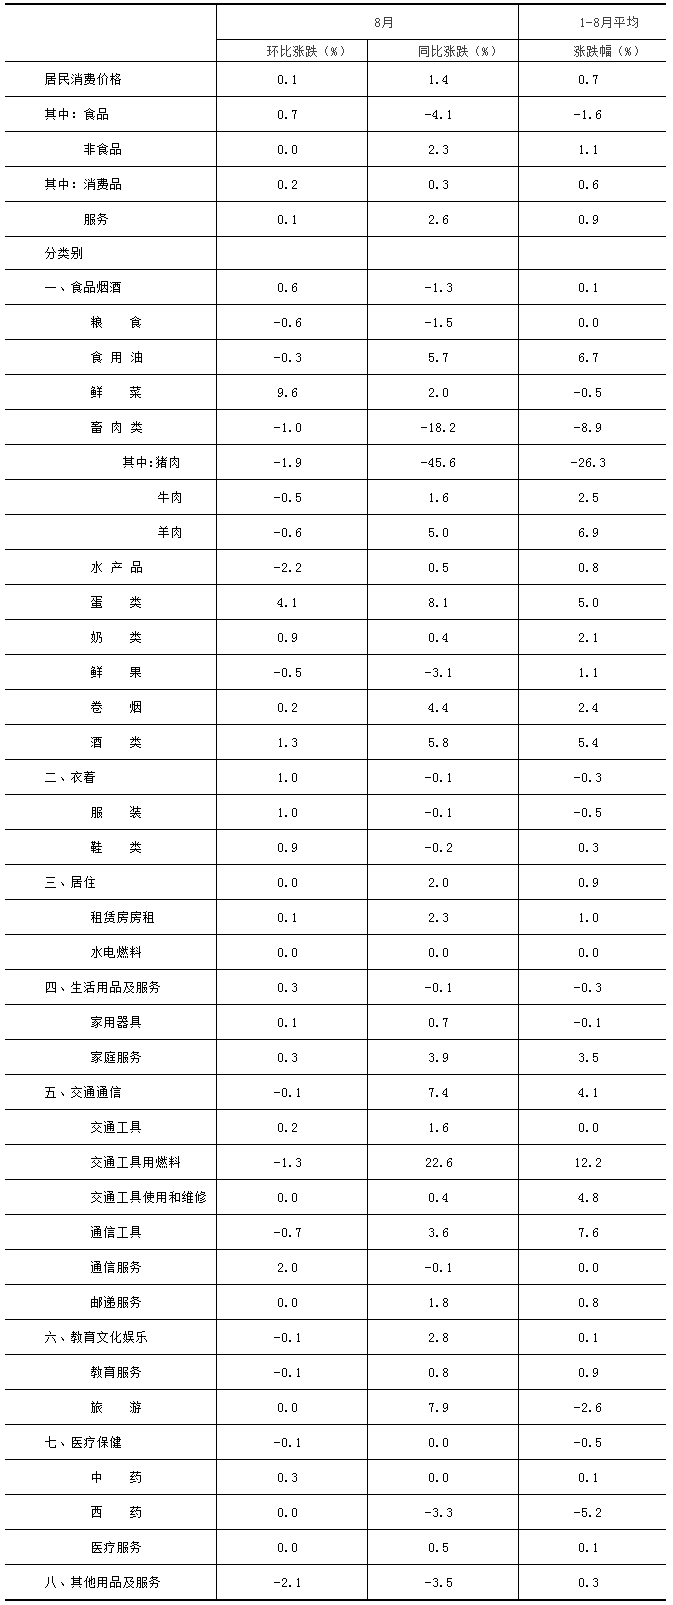 2021年8月份北京居民消费价格主要数据